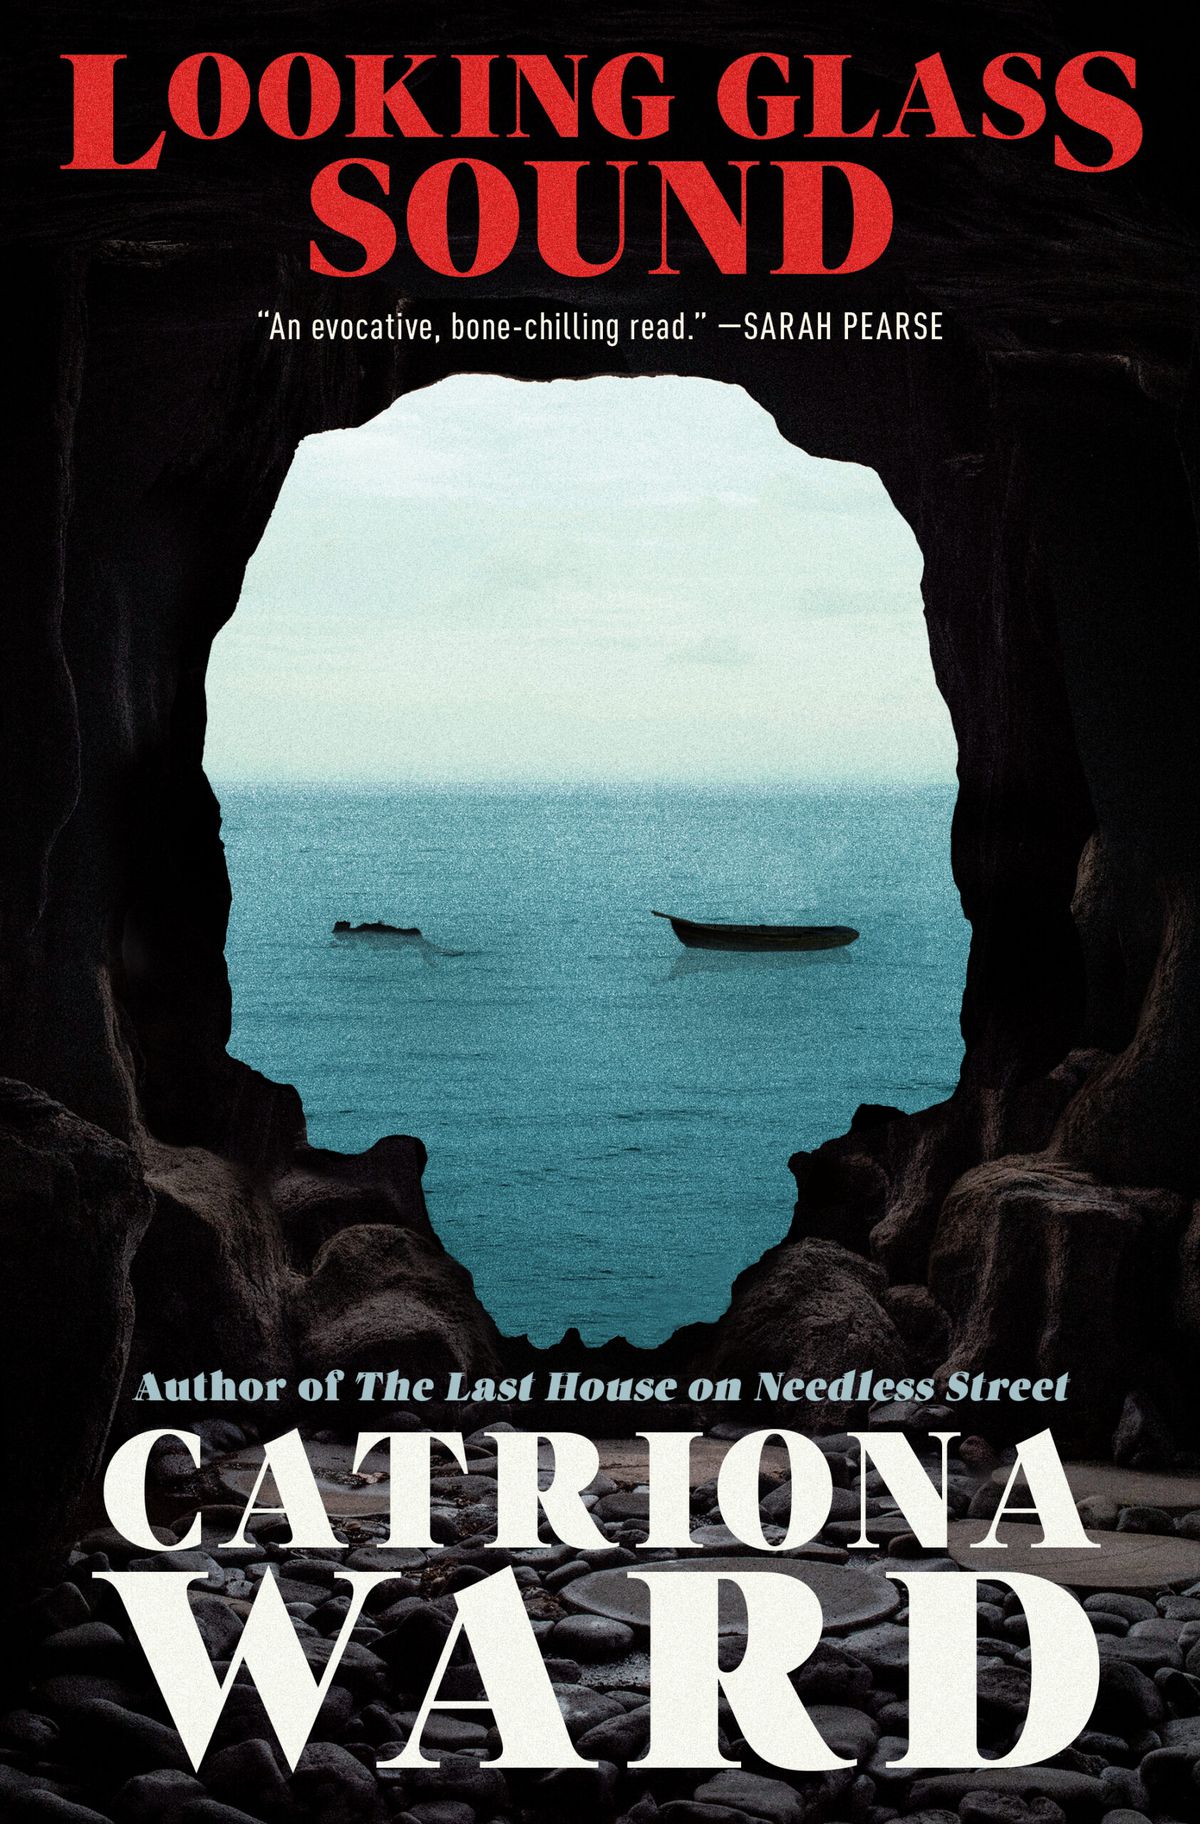 Image de couverture de Looking Glass Sound de Catriona Ward.  L'image provient de l'intérieur d'une grotte, avec une sortie en forme de crâne dans l'océan, où l'on voit un bateau vide et une personne flottant.